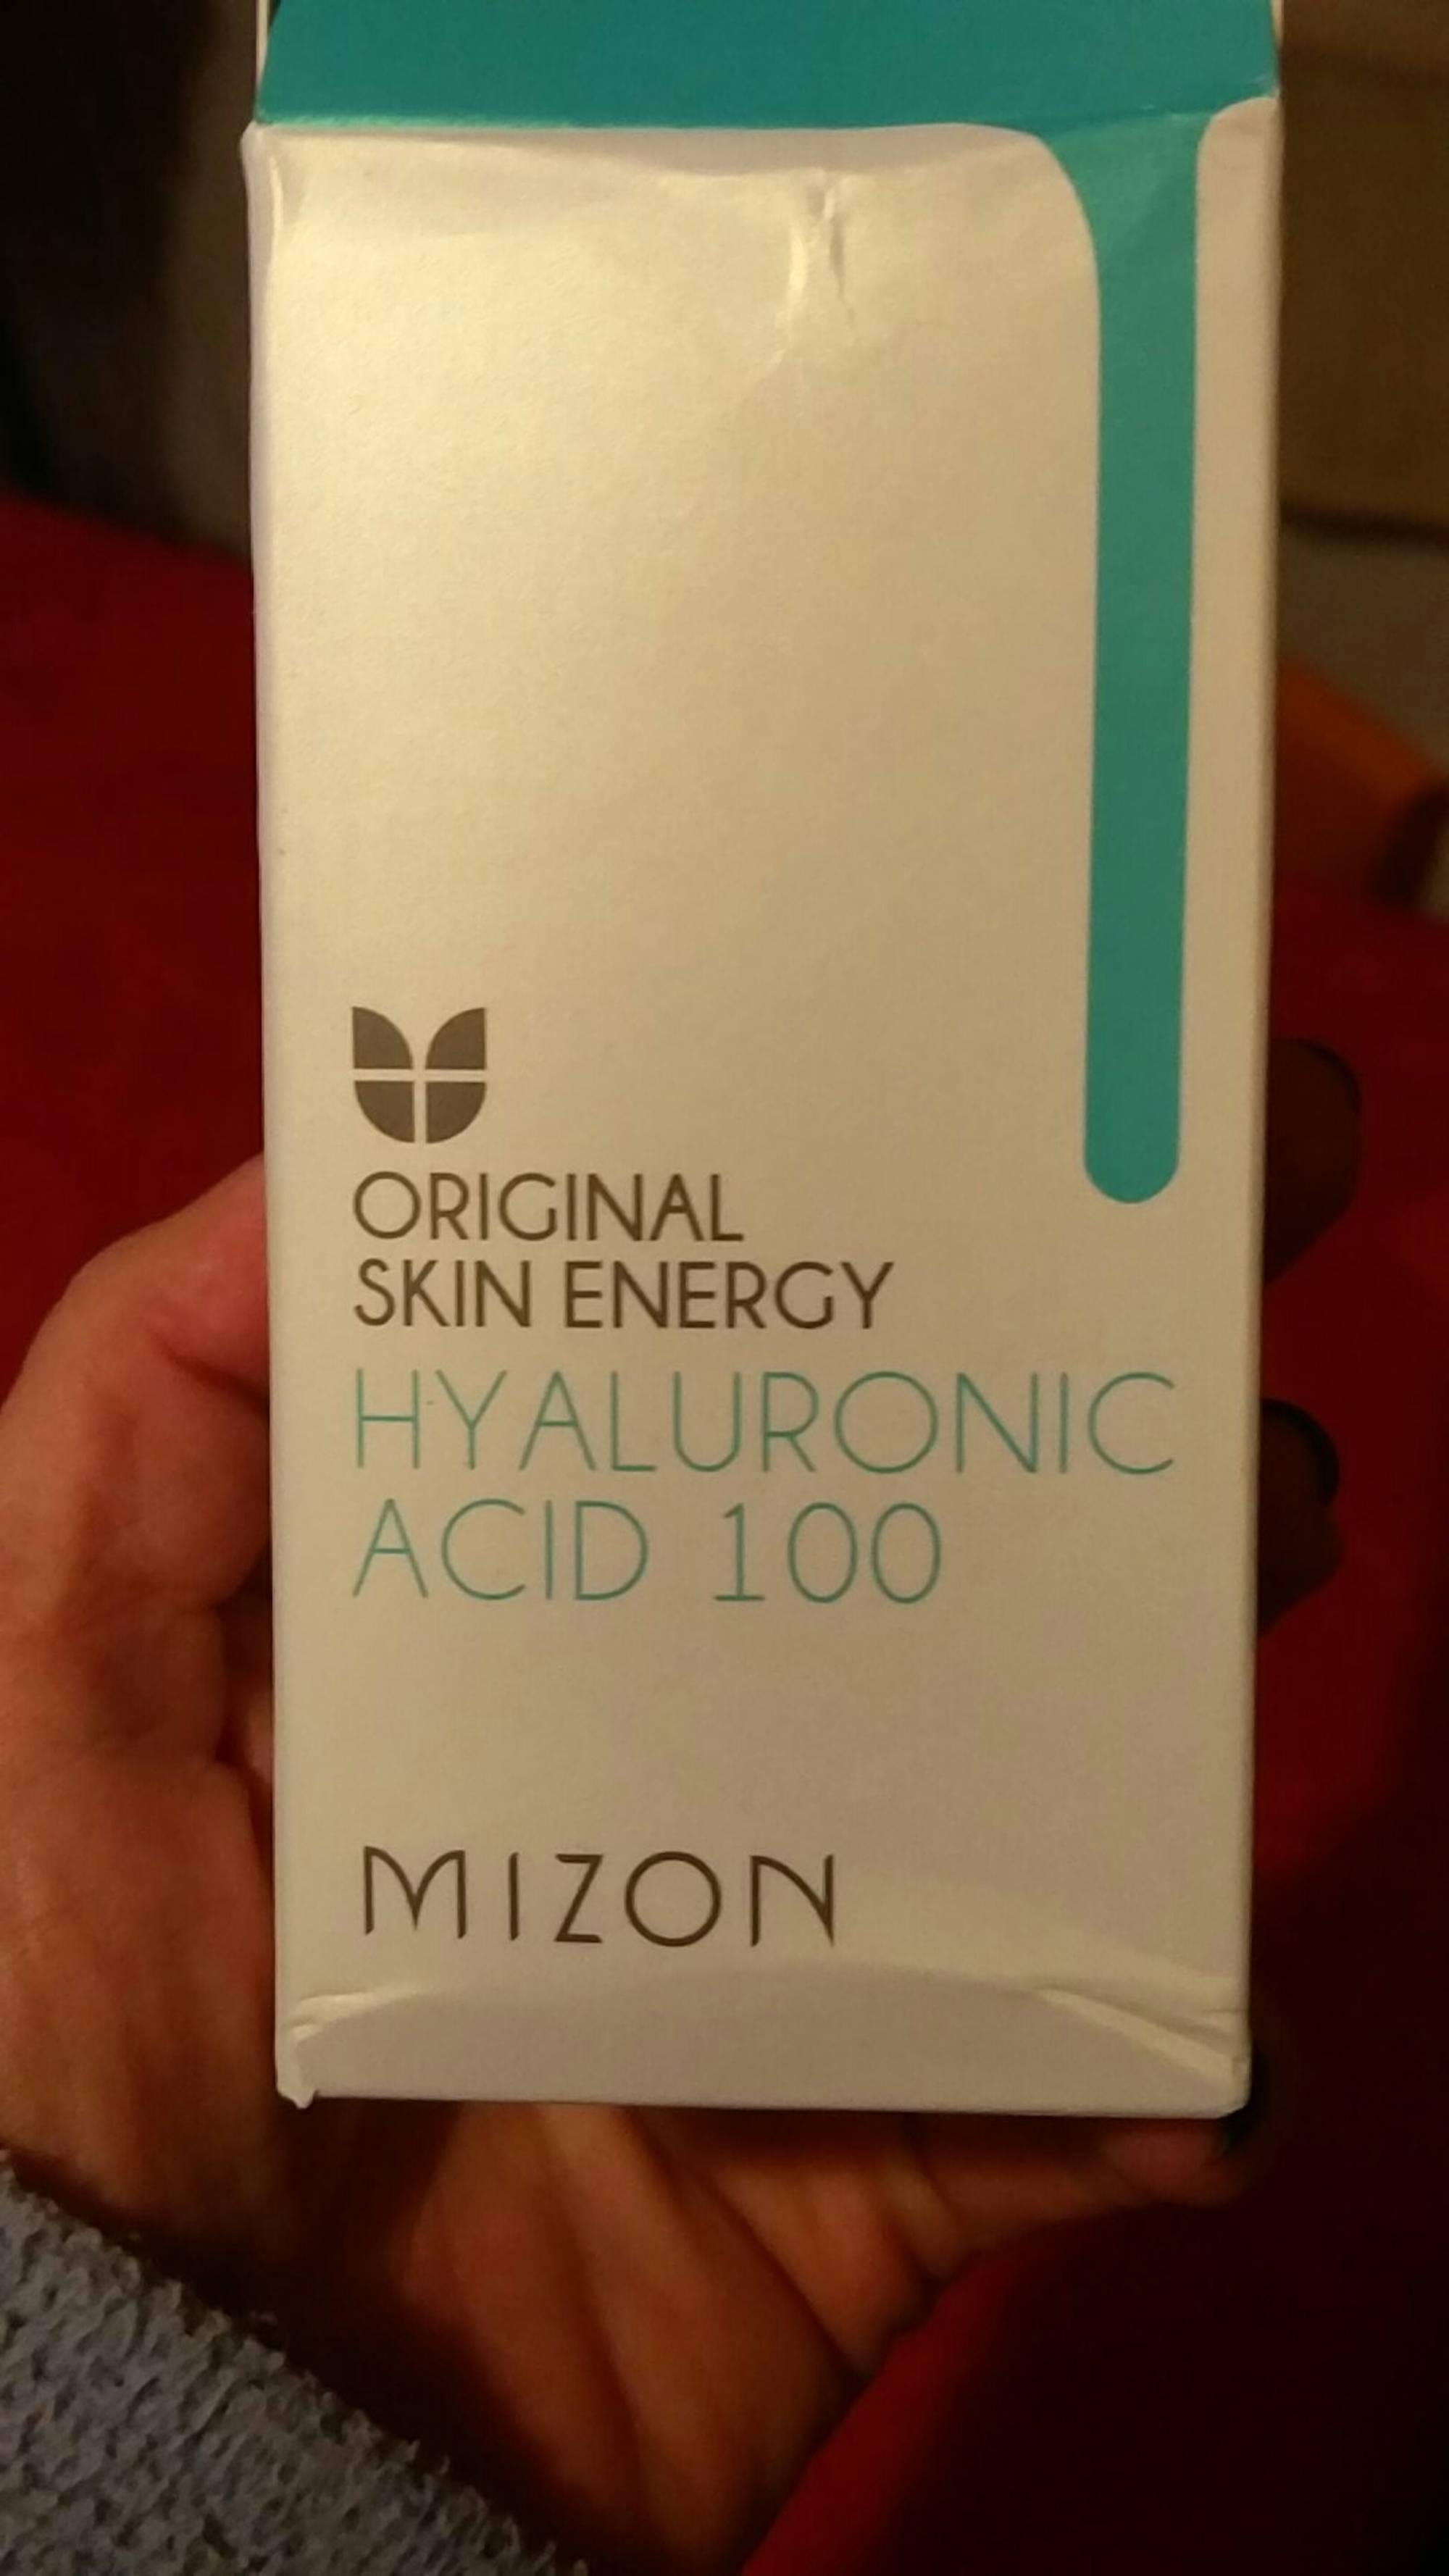 MIZON - Original skin energy hyaluronic acid 100 